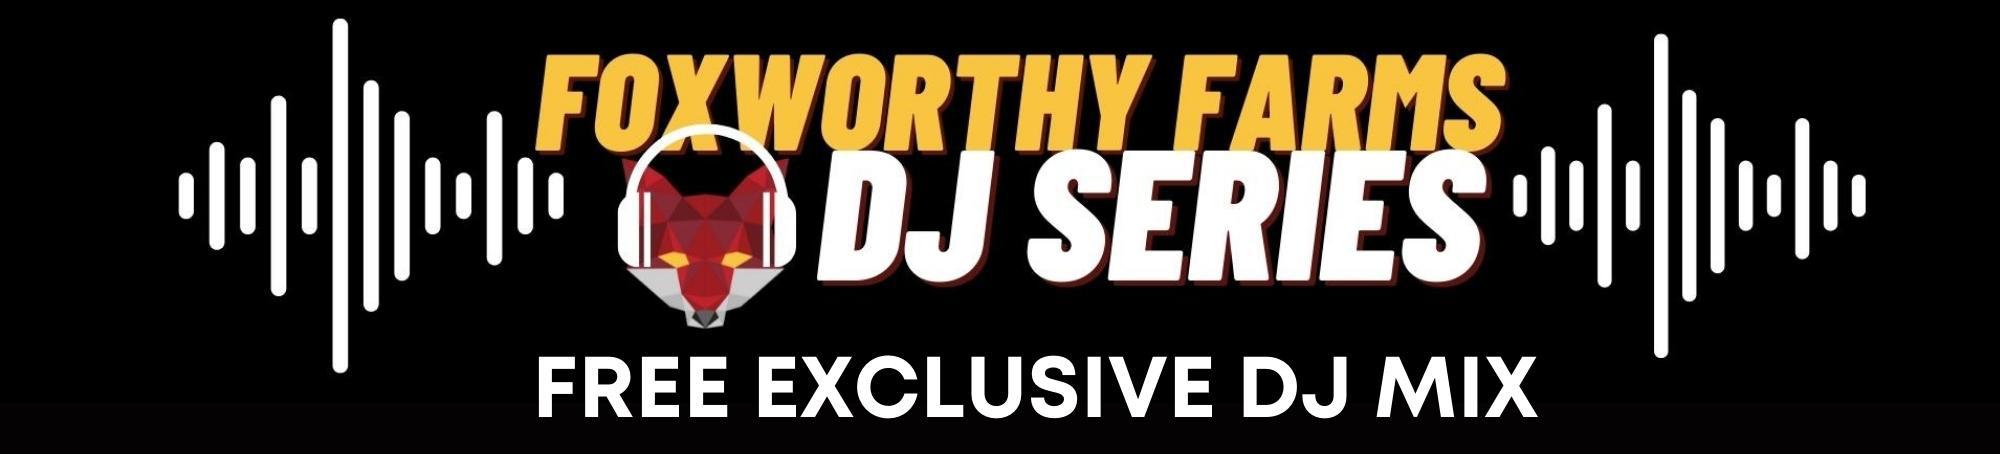 Foxworthy Farms • DJ Series • FREE DJ Mix Download